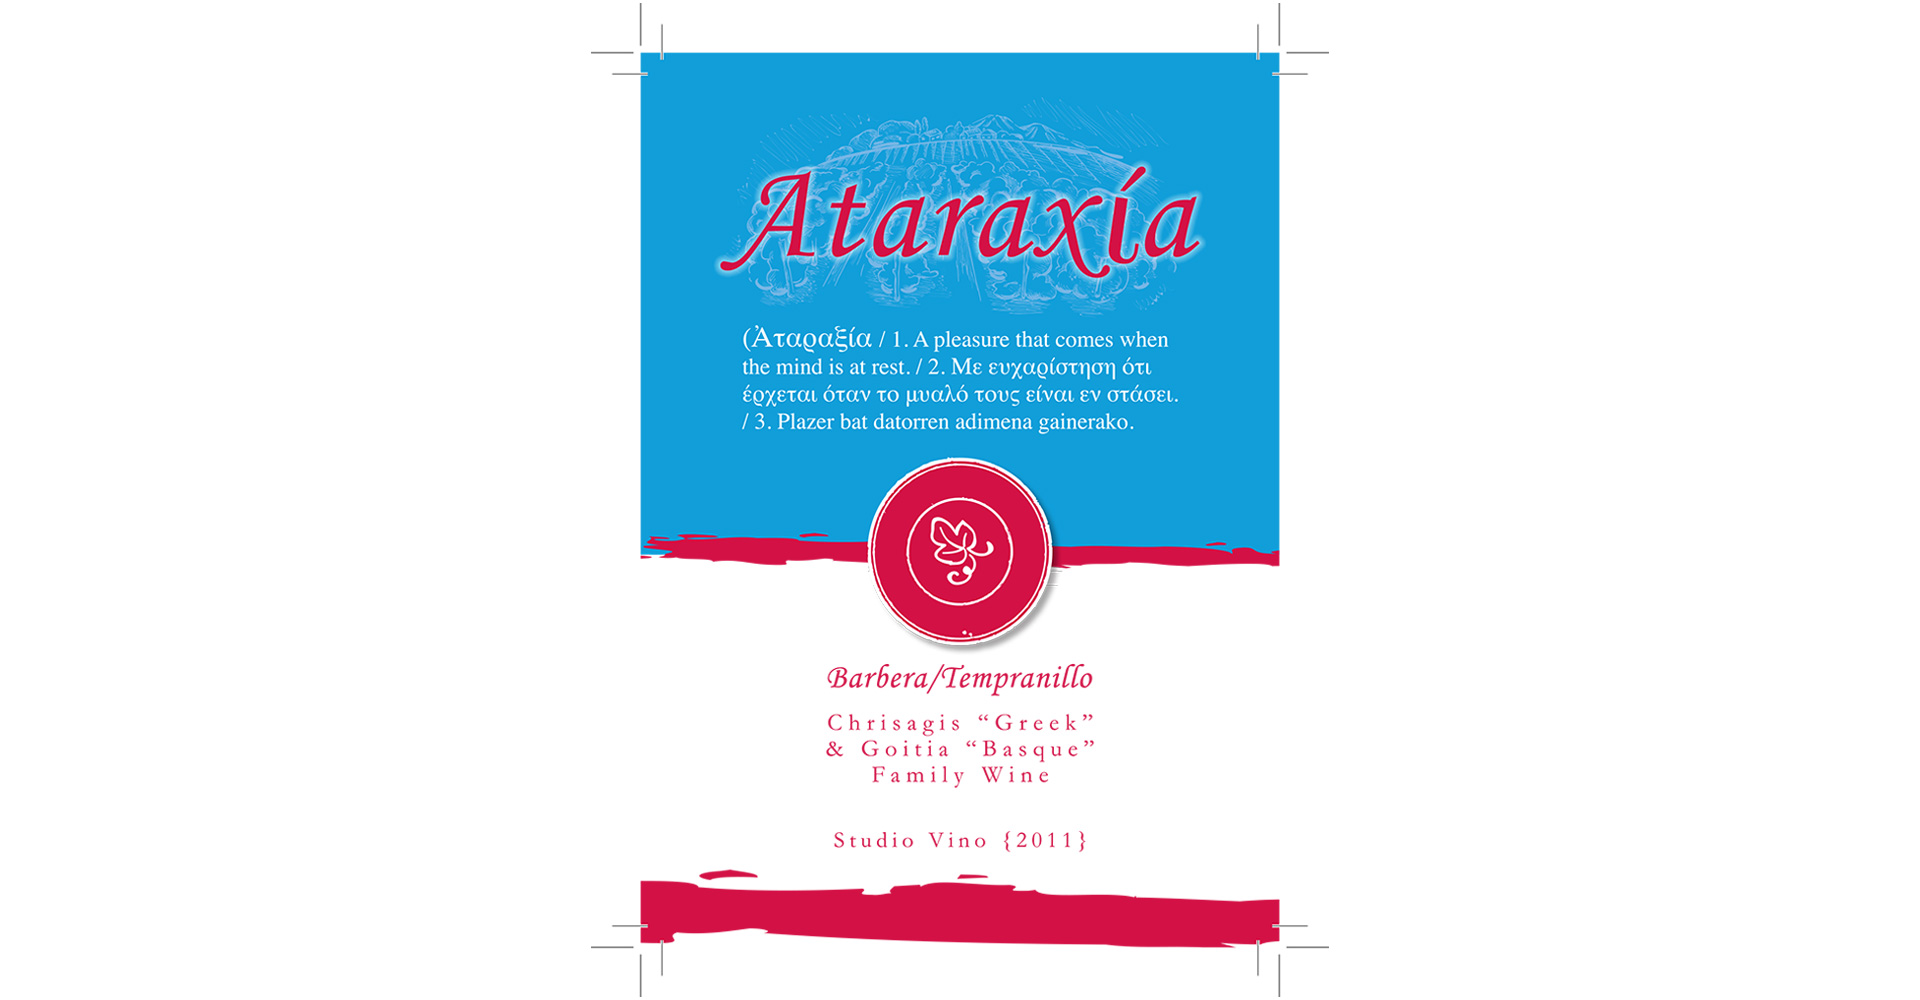 Monti's Wine Label - Personal Label